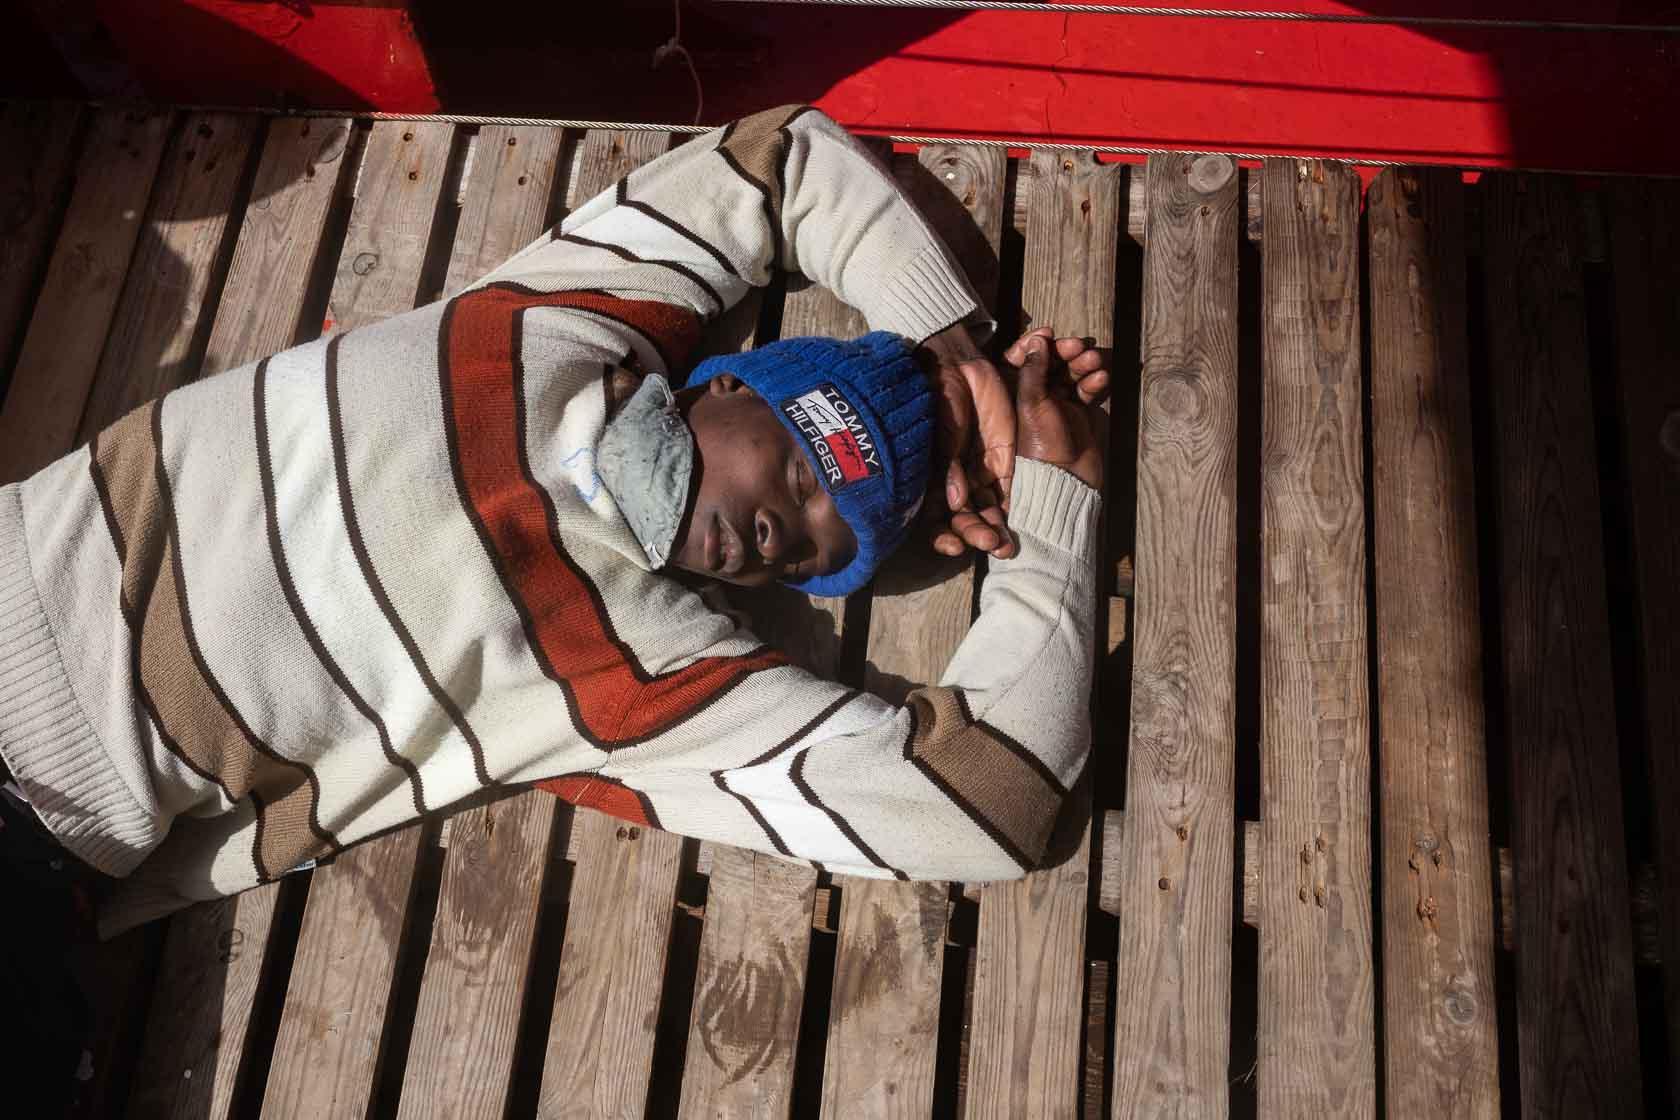 Un jeune rescapé épuisé dort sur le pont du bateau après avoir été secouru. Augusta, Italie. Mars 2021